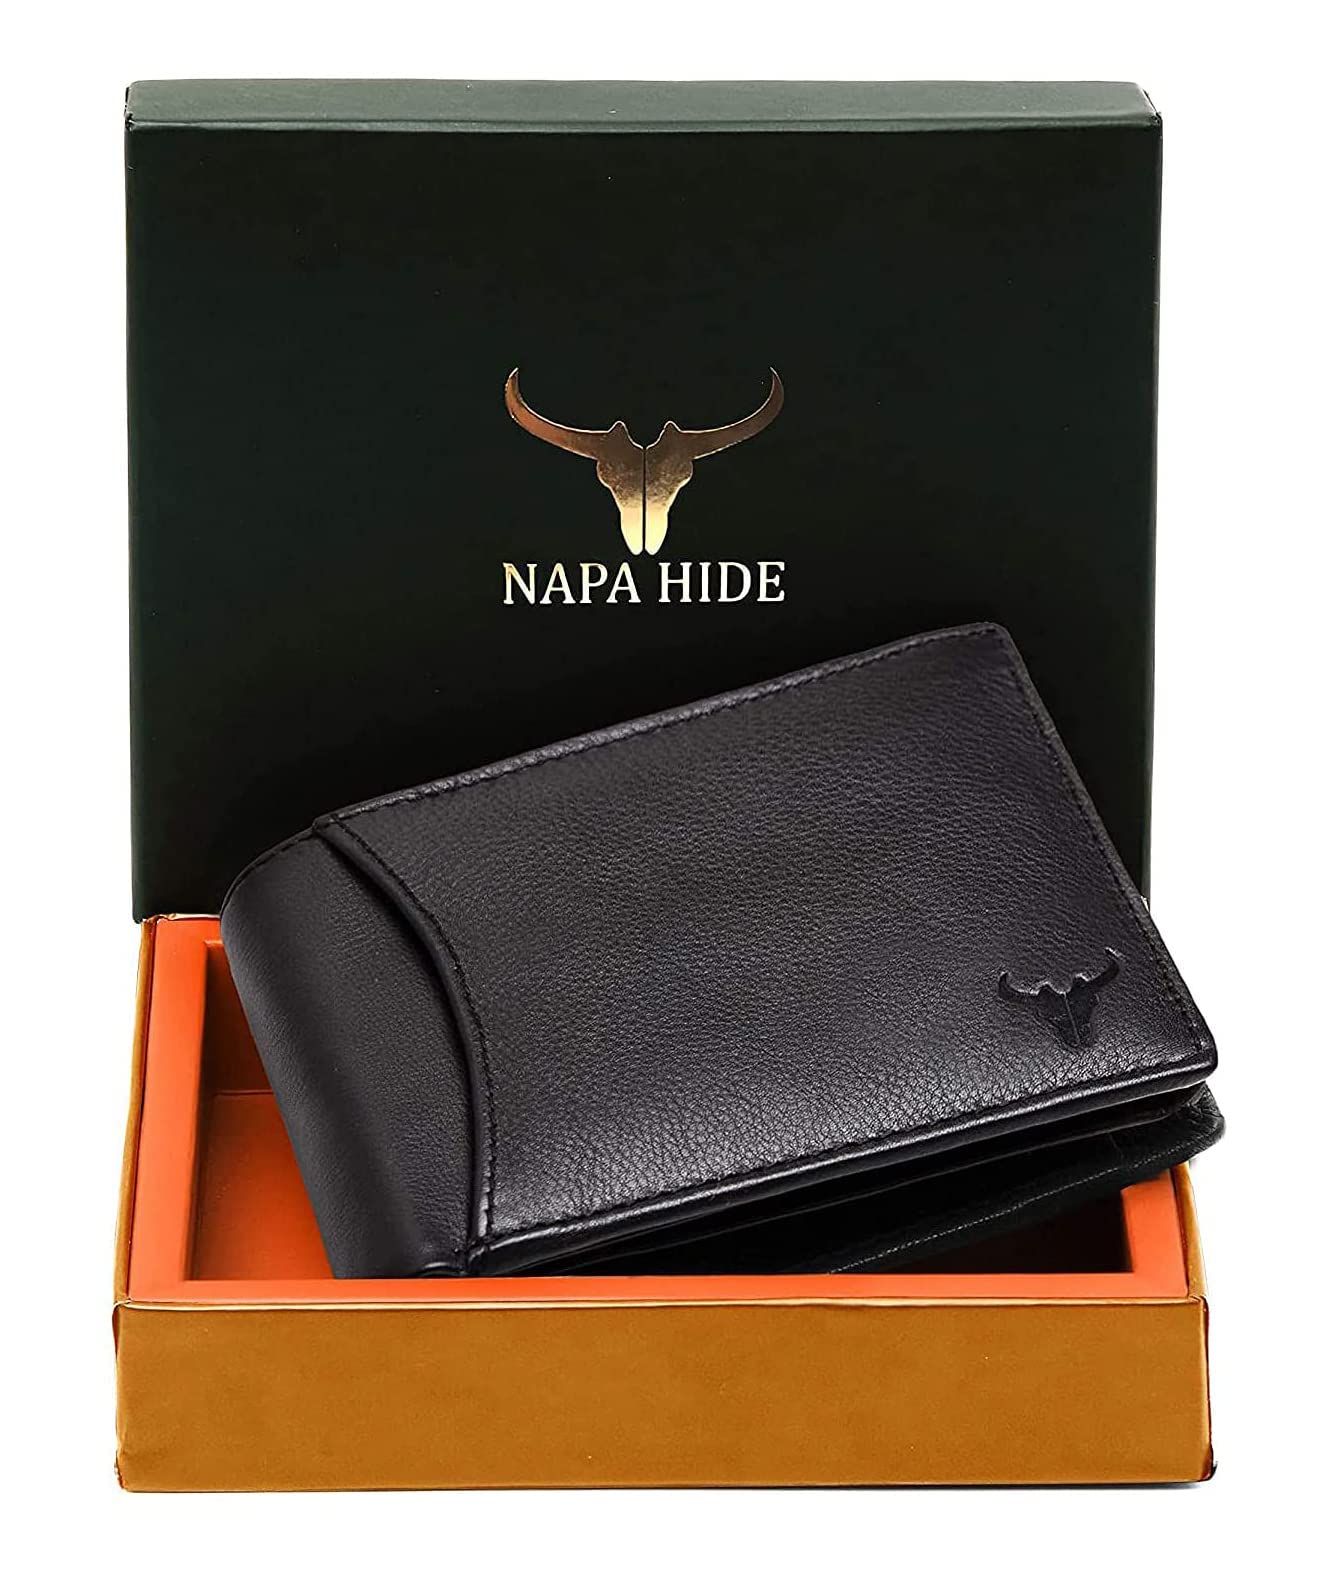 NAPA HIDE India Leather Men Wallet (Black)